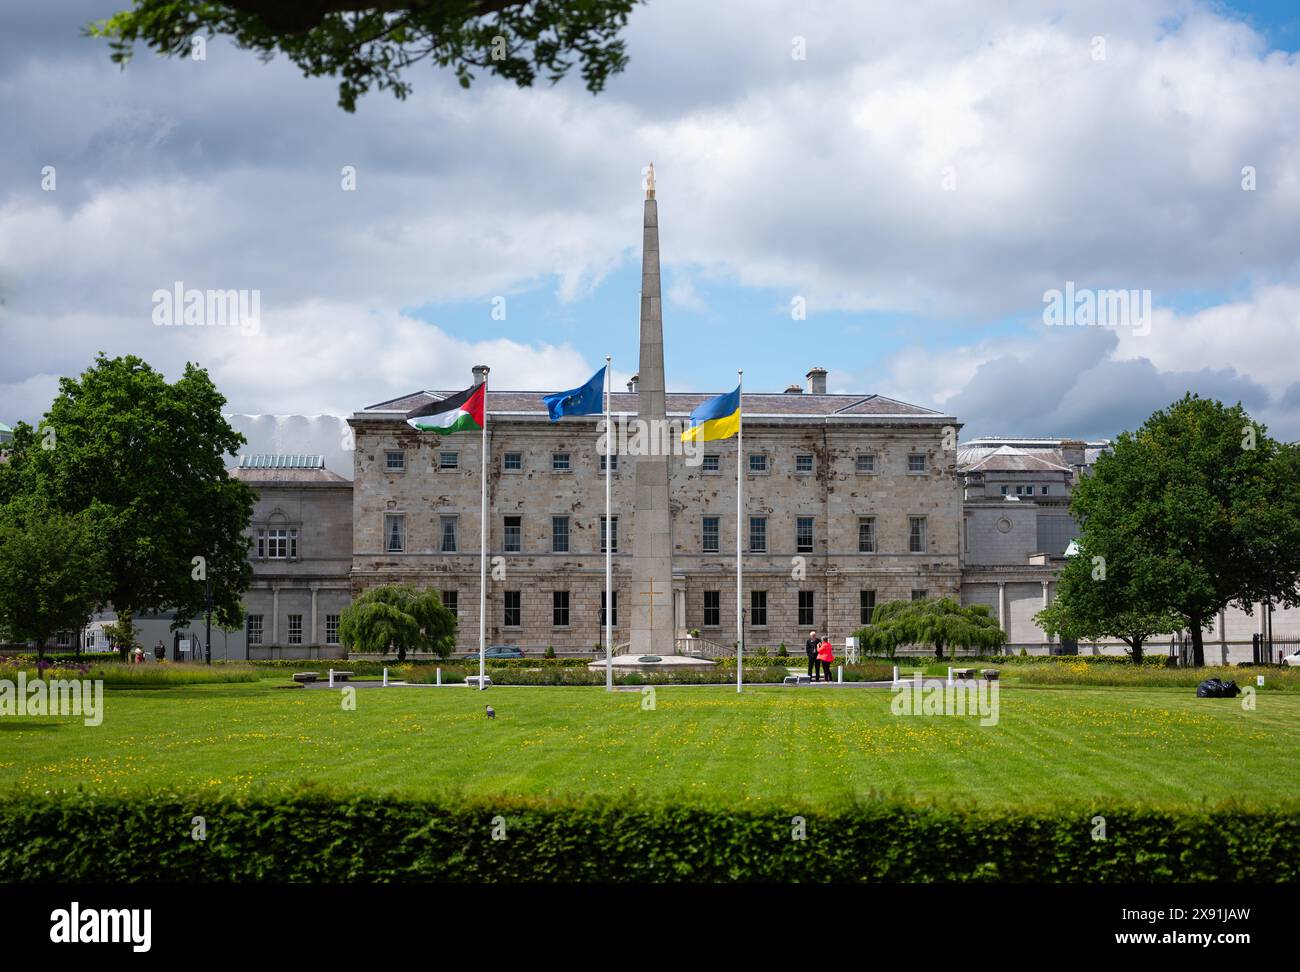 Drapeau palestinien flottant devant Leinster House dans la ville de Dublin, en Irlande. Banque D'Images